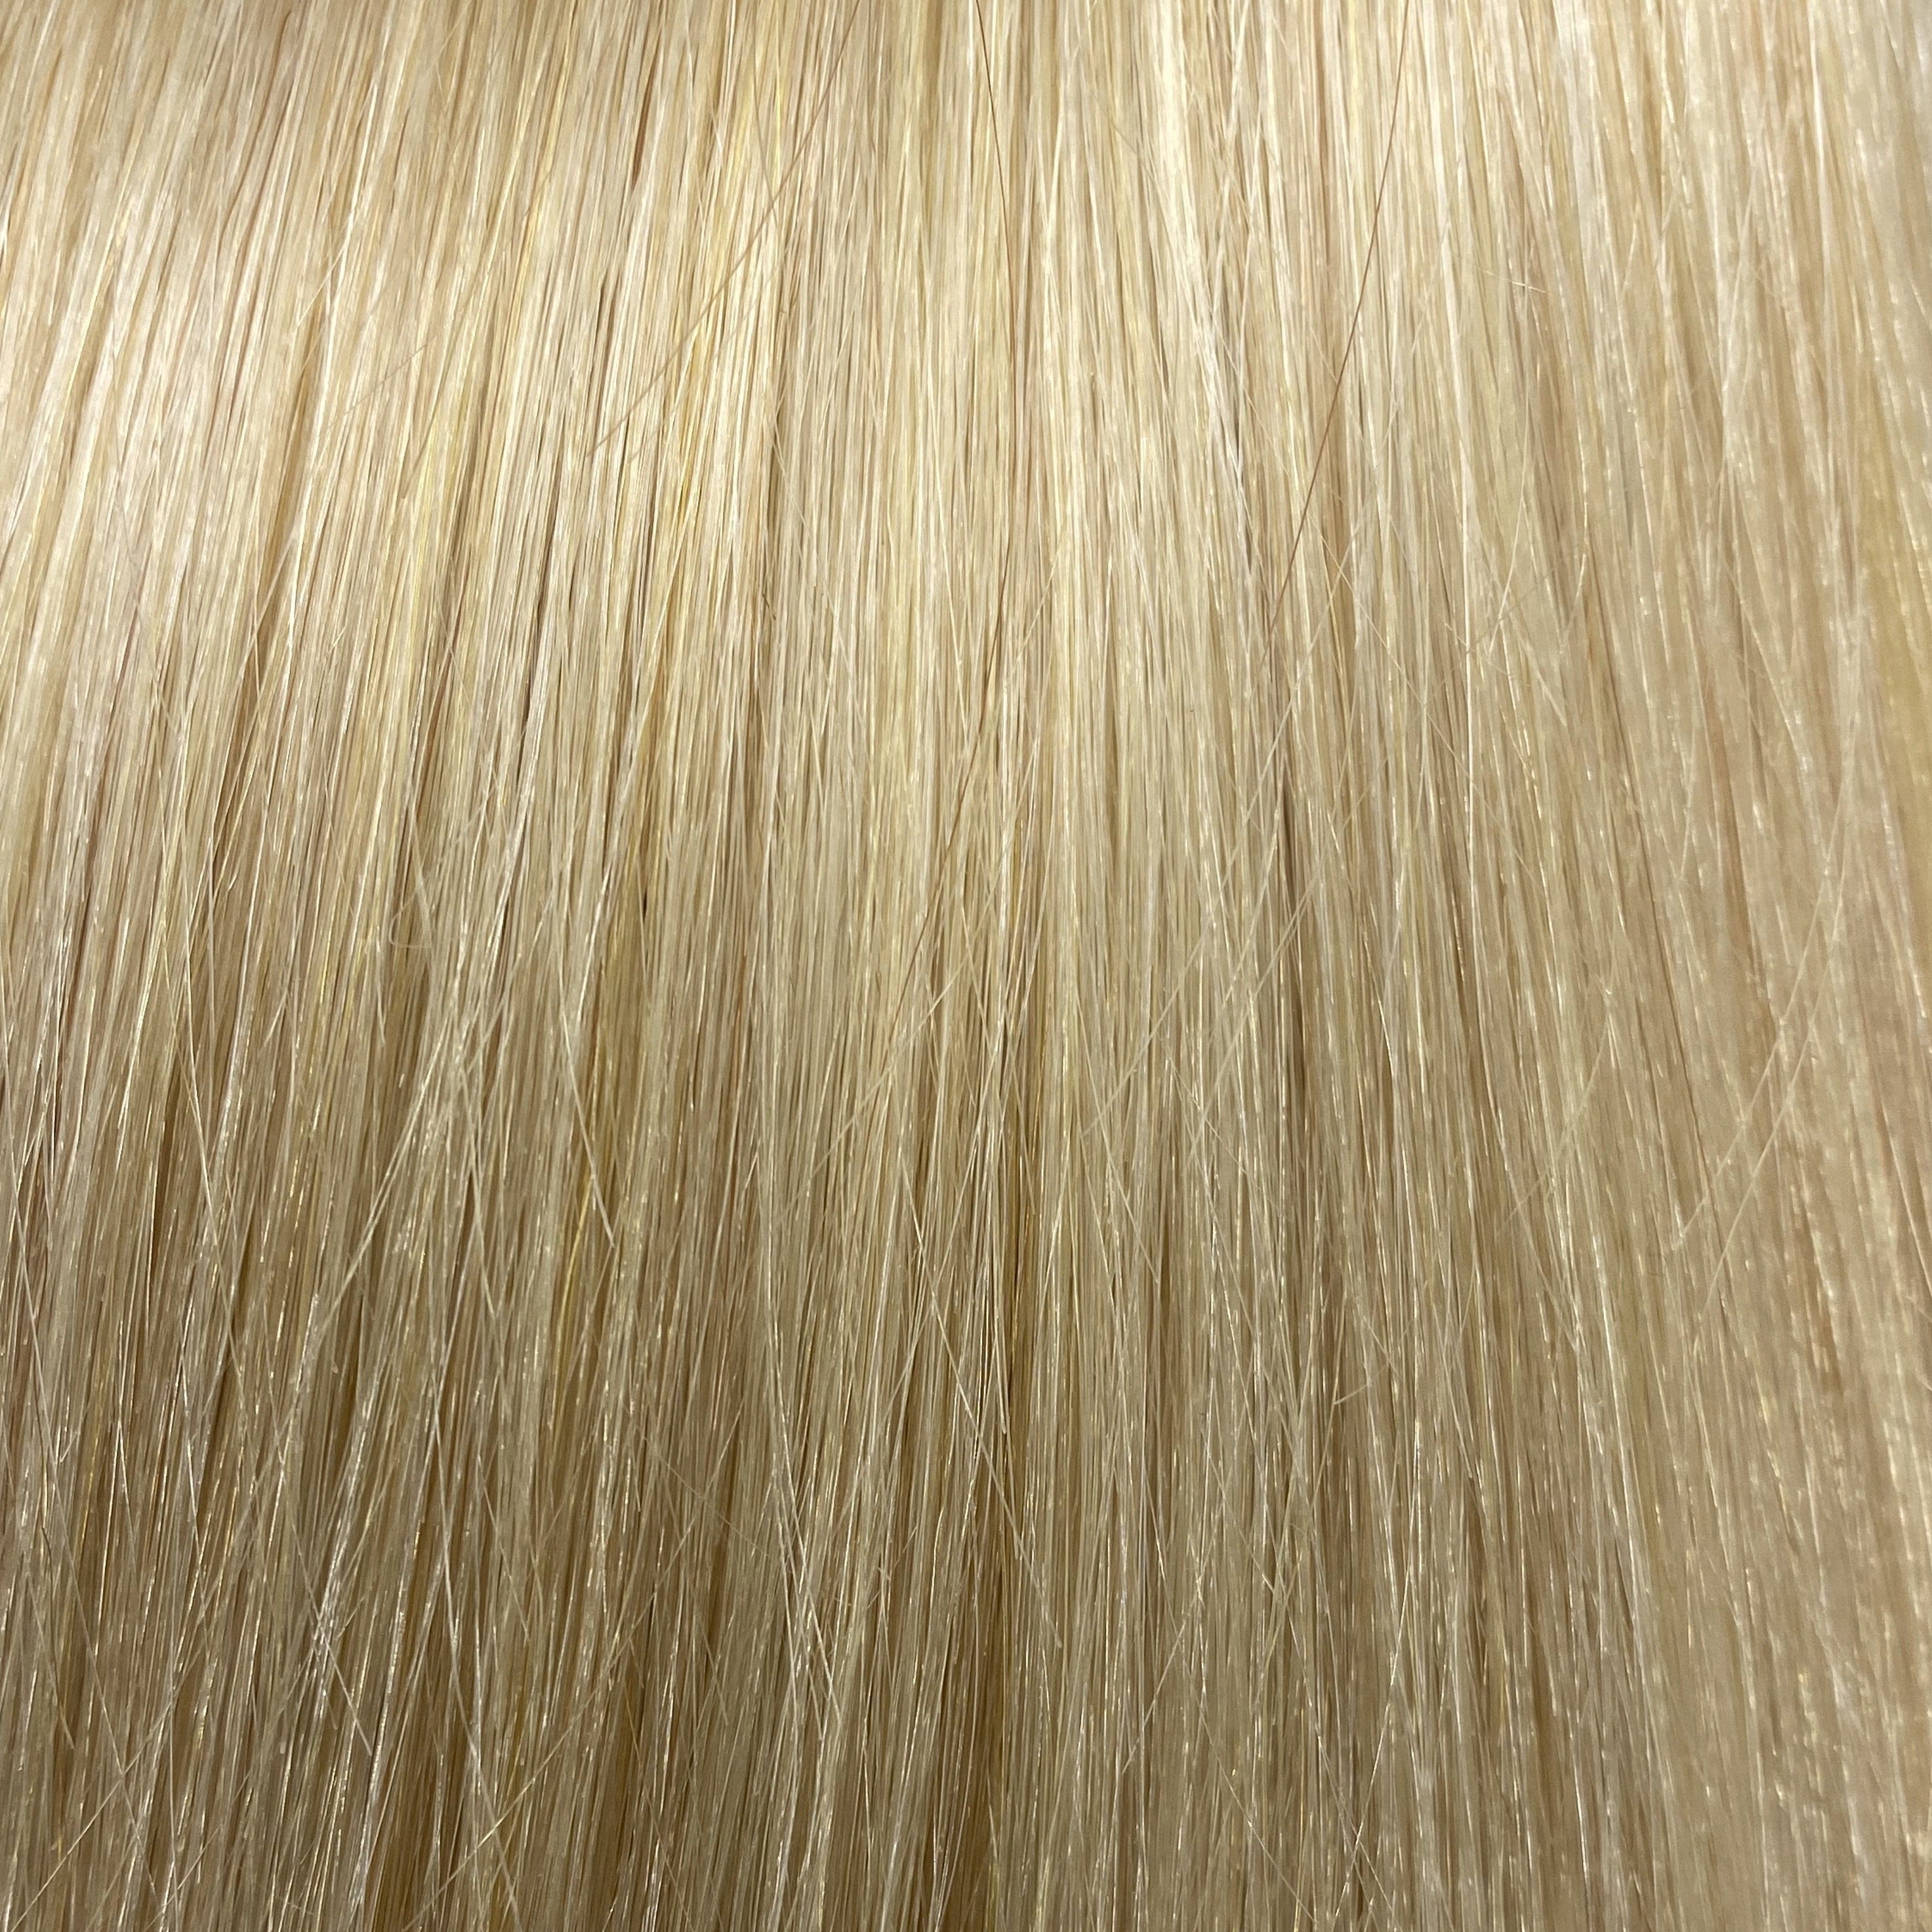 Velo Sale #22 - 16 inches - Platinum Blonde - Image 1